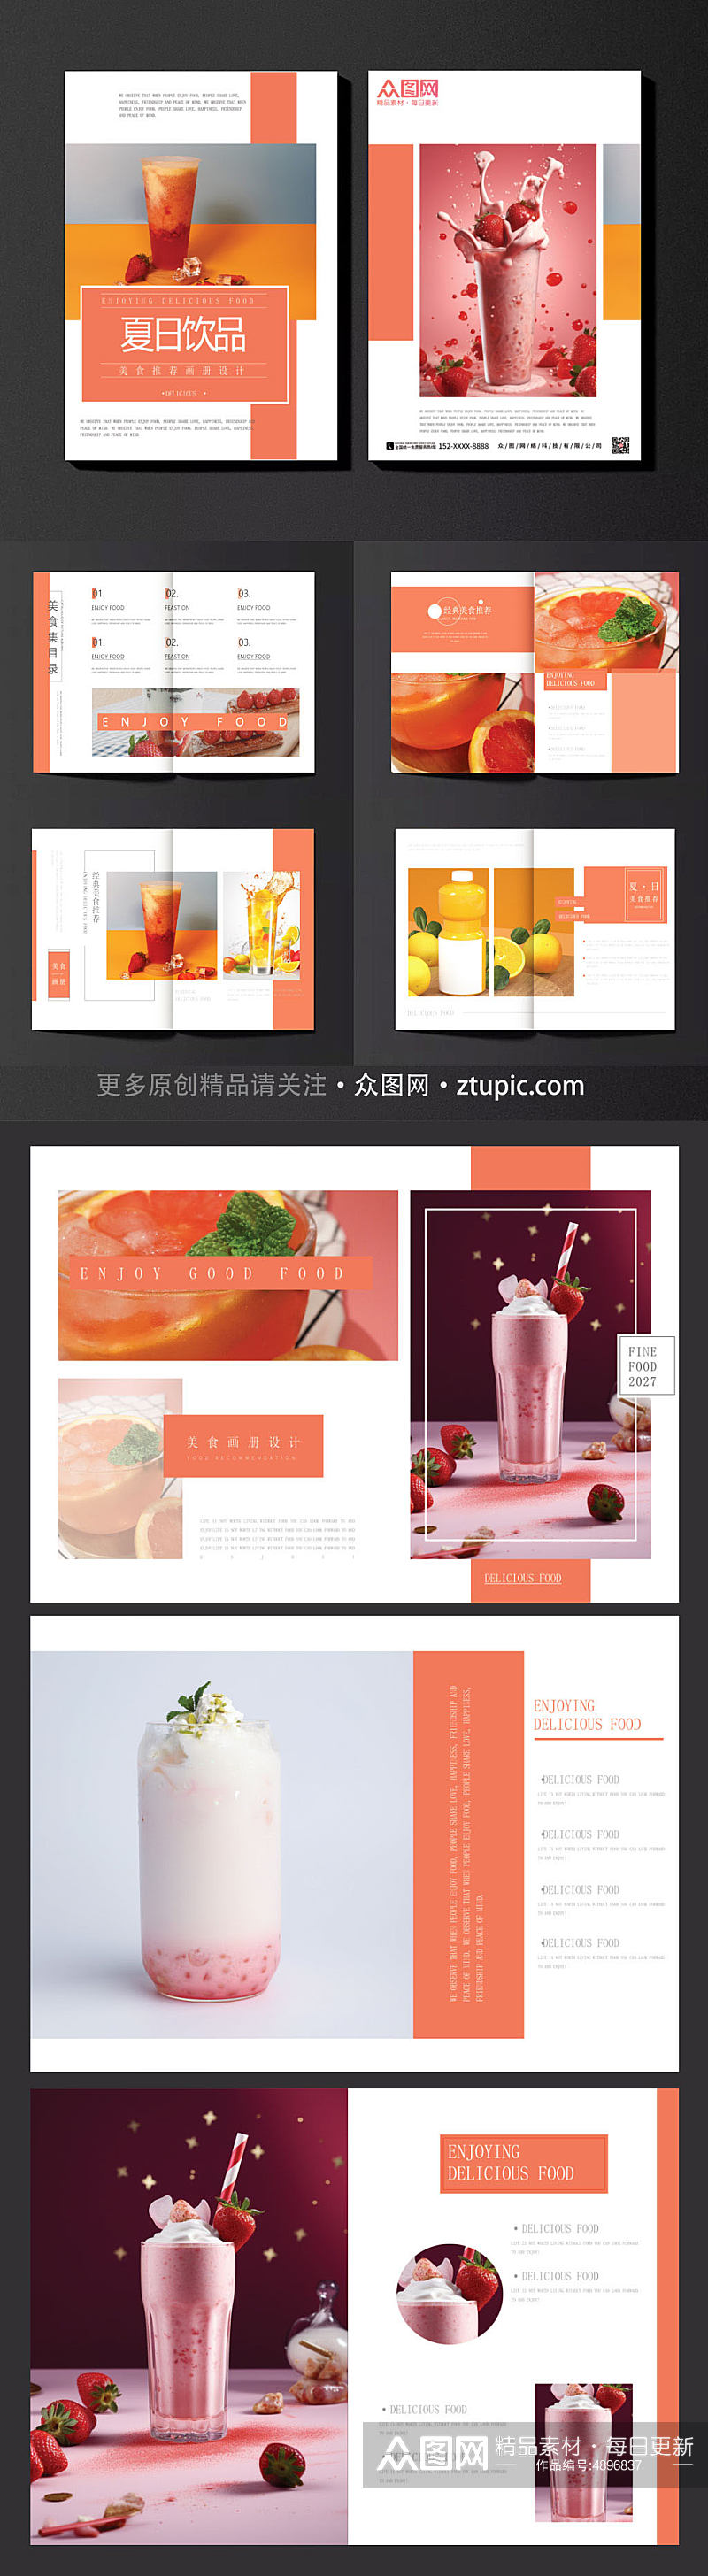 夏日饮品奶茶店饮料饮品果汁产品宣传画册素材